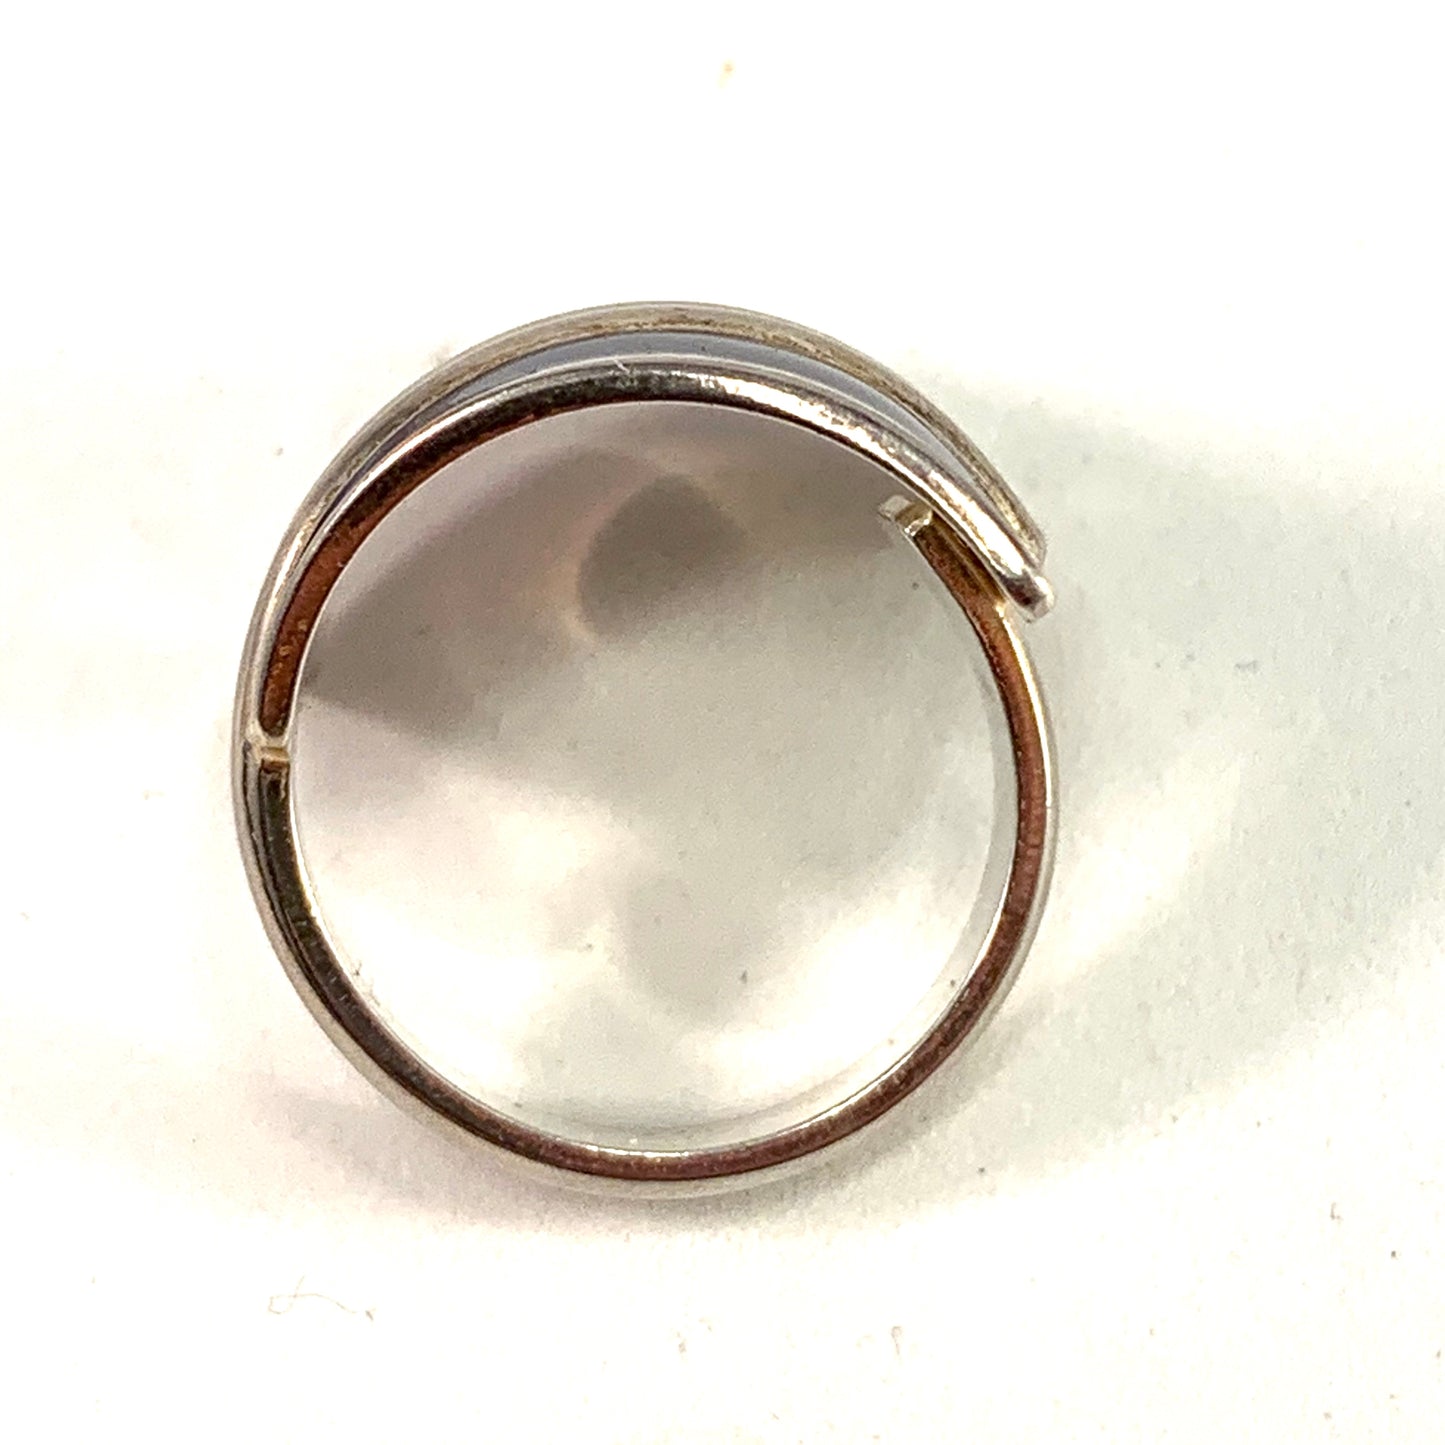 David-Andersen designer Millie Behrens Vintage Sterling Silver Blue Enamel Adjustable Size Ring.